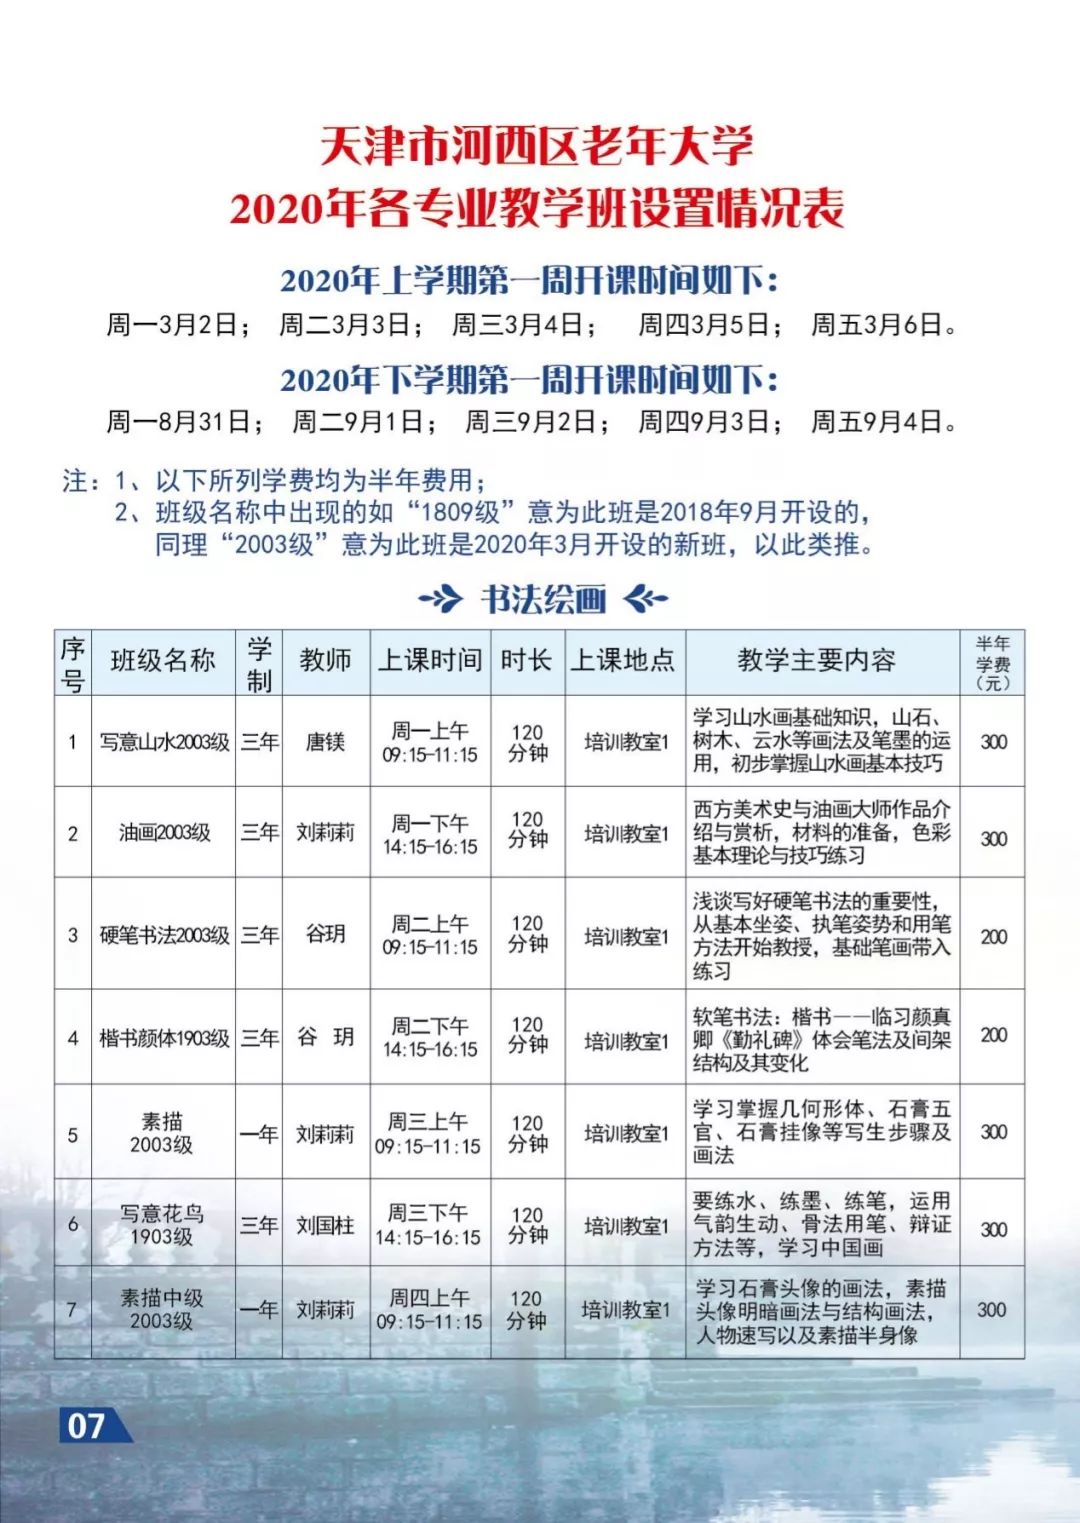 老年大学天津市河西区老年大学2020年度招生简章